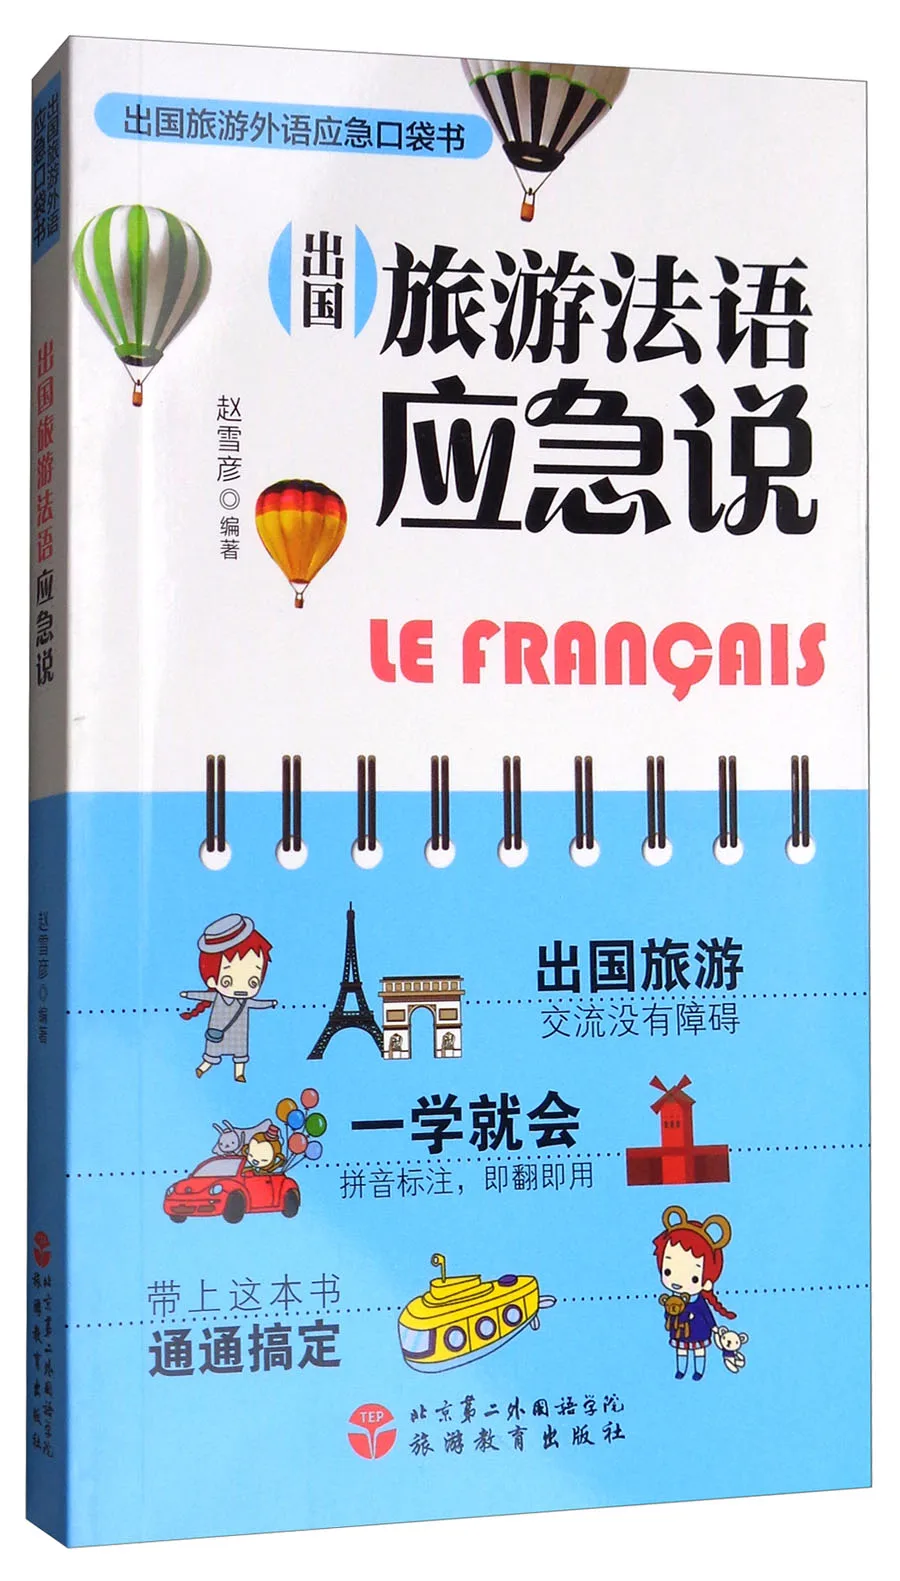 

Urgence parlant français pour voyager à l'étranger/Livre de poche d'urgence pour voyager à l'étranger en langues étrangères